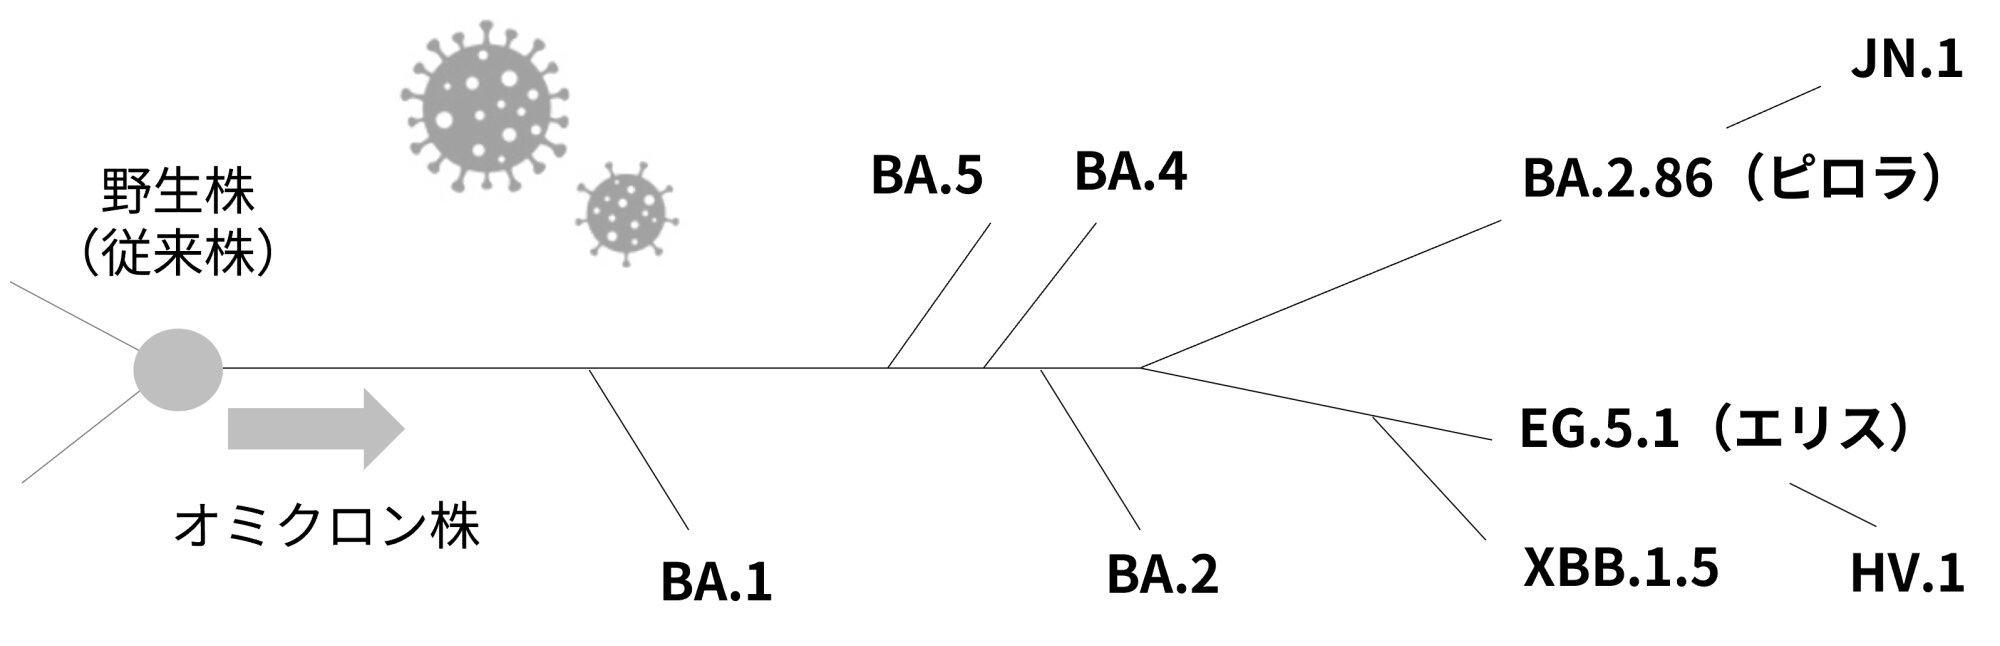 図１．簡略化したオミクロン株の派生（参考資料２をもとに筆者作成、イラストはイラストACより使用）